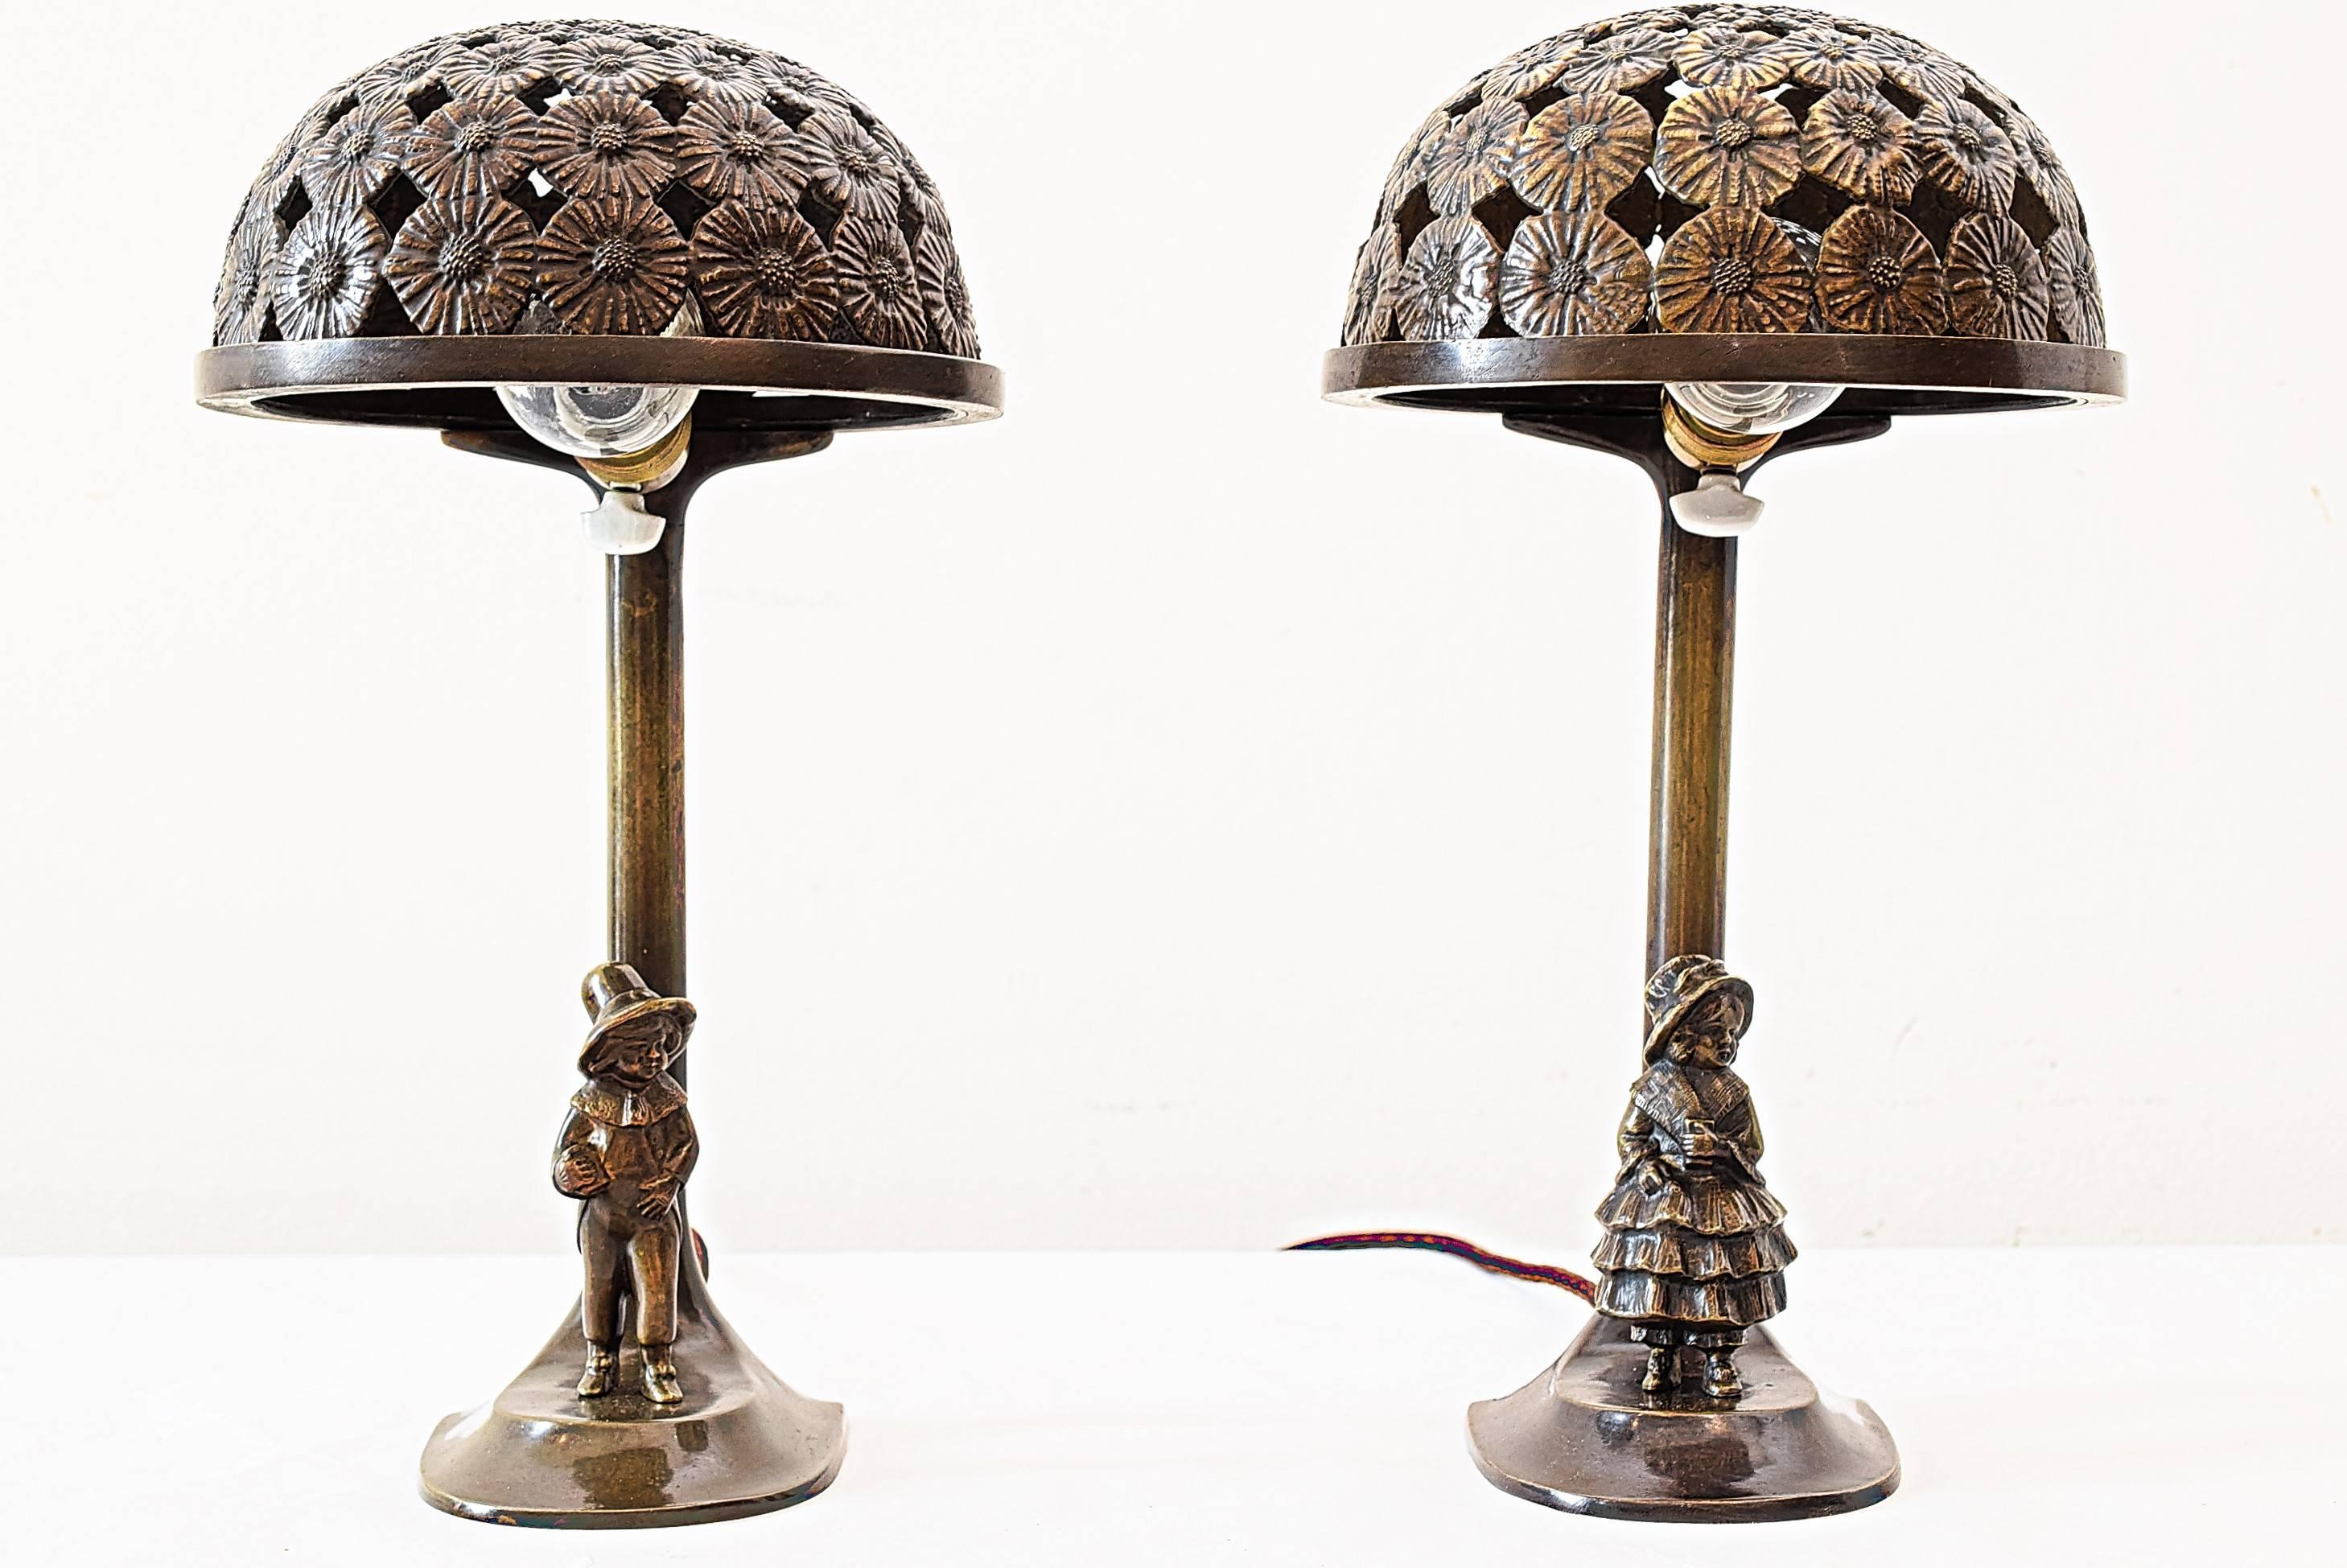 Two Jugendstil table lamps.
Brass.
Original patina.